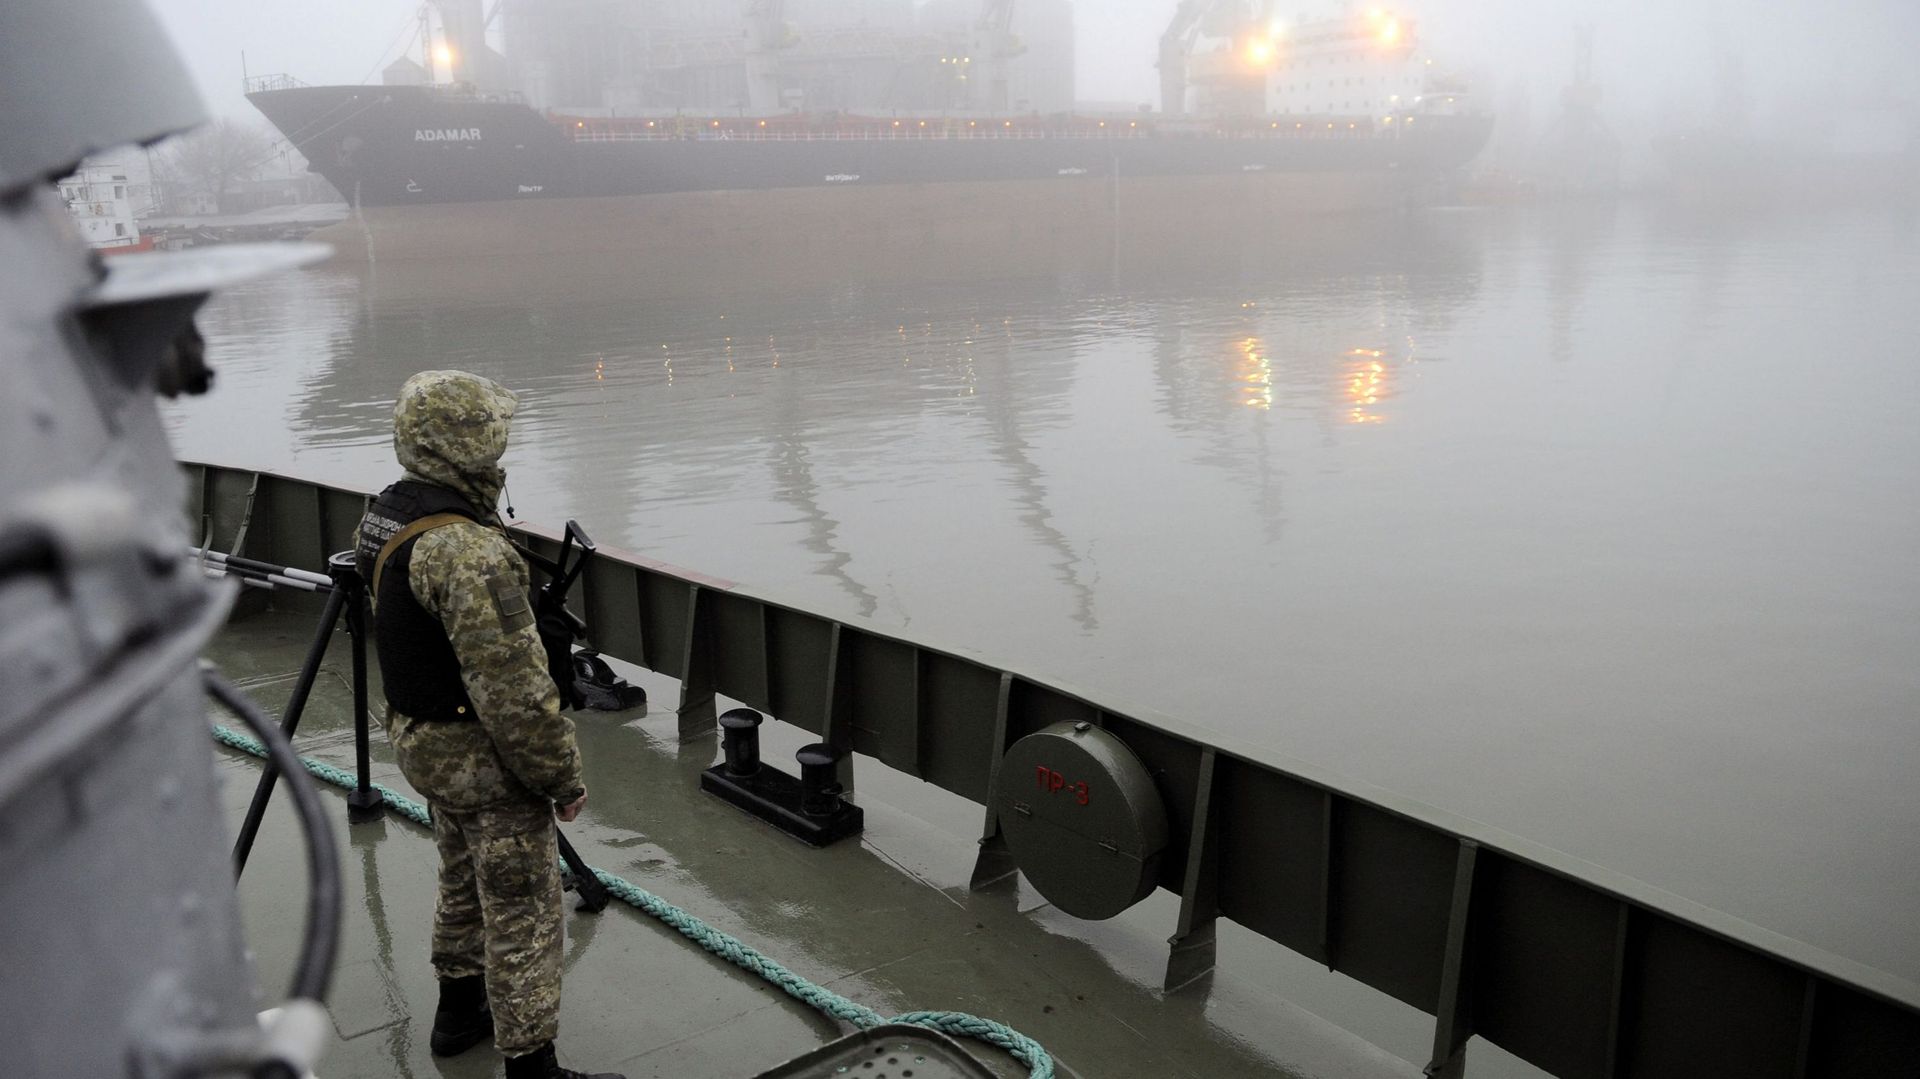 La loi martiale a été instaurée en Ukraine, suite à l'attaque par les Russes de trois bateaux ukrainiens en mer d'Azov.